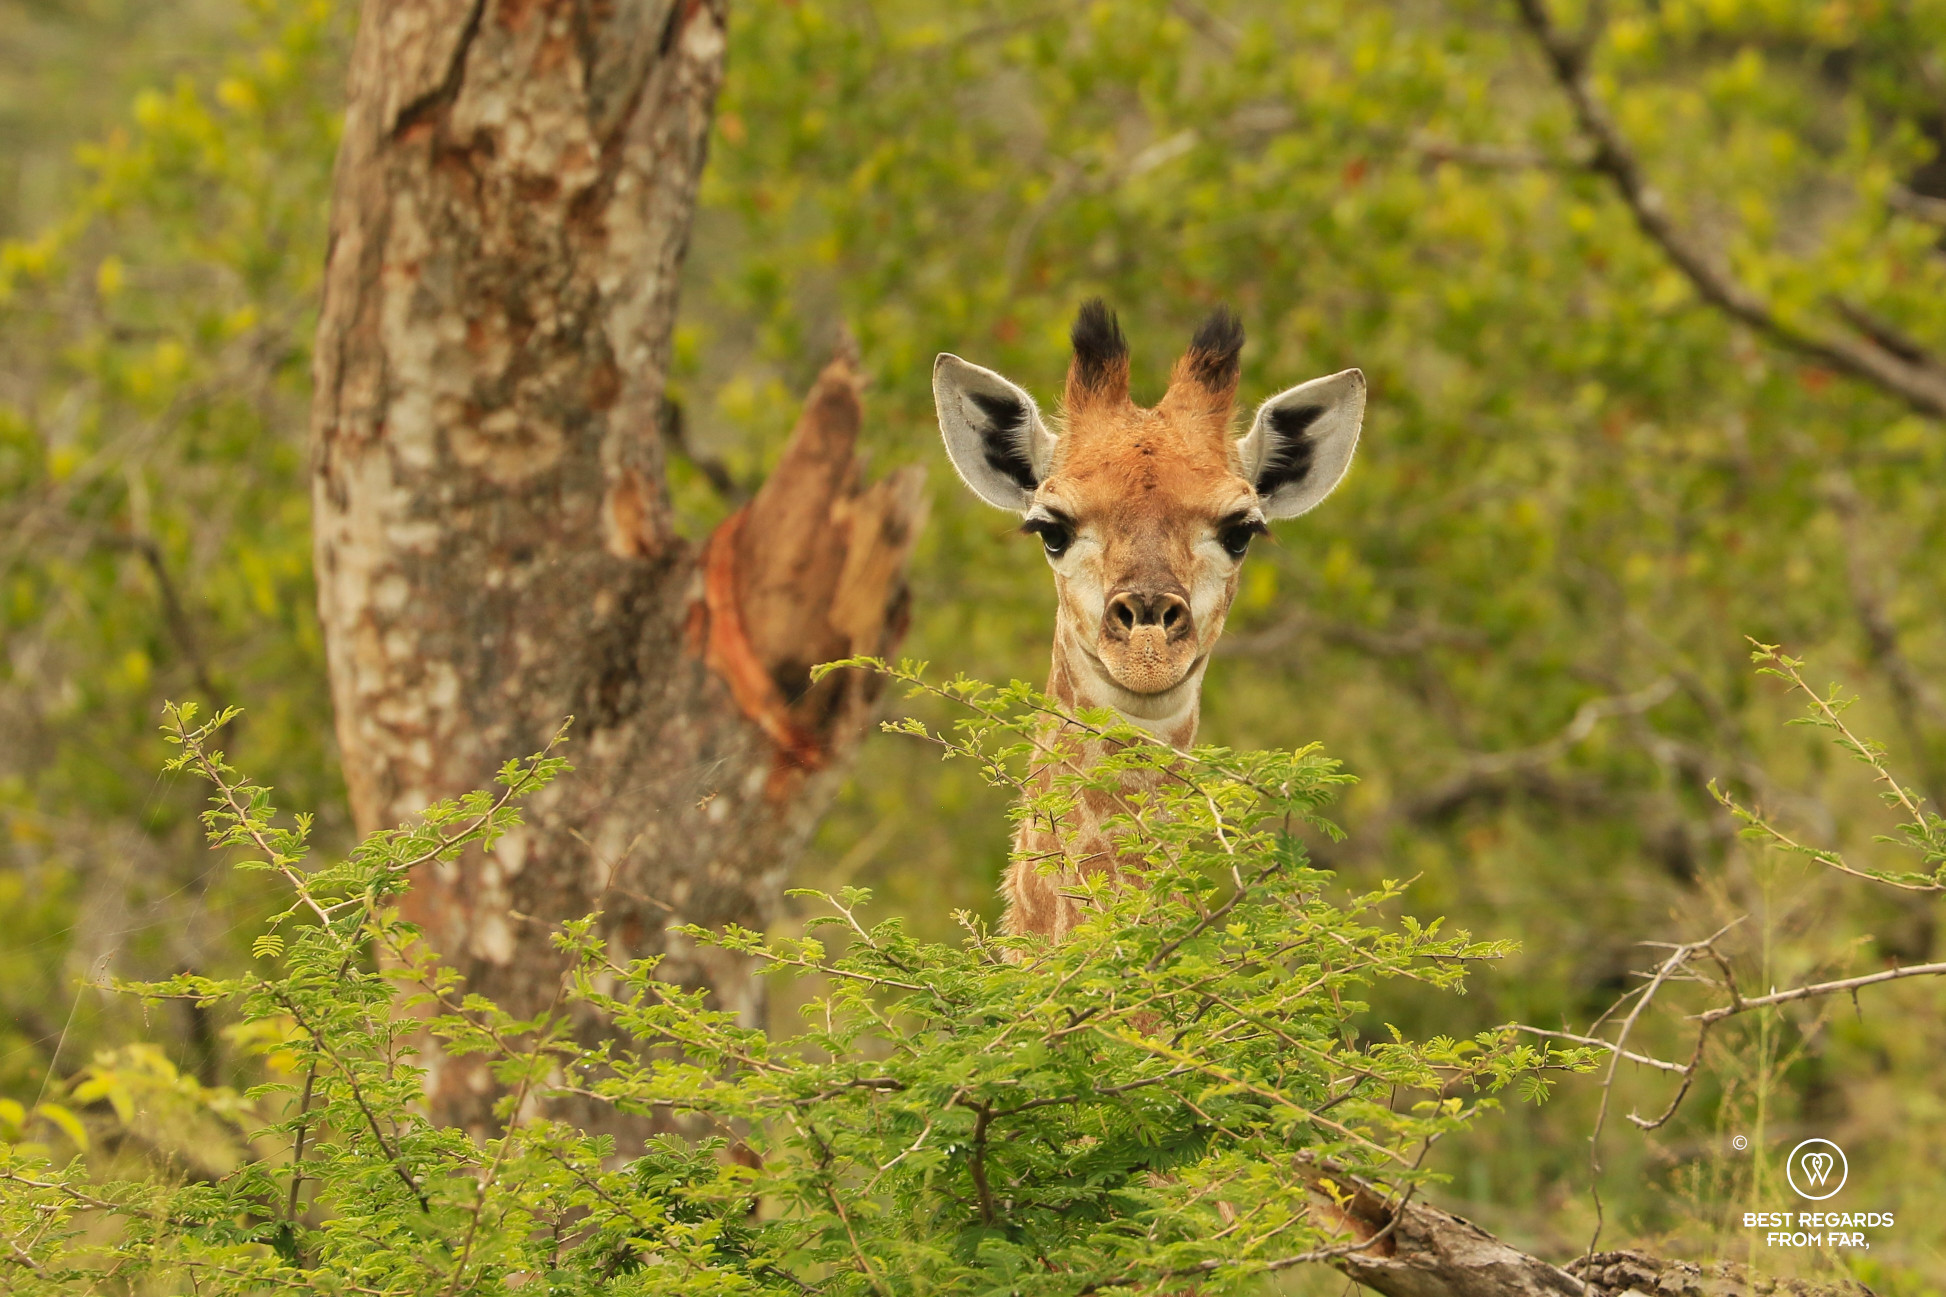 Baby giraffe, South Africa safari